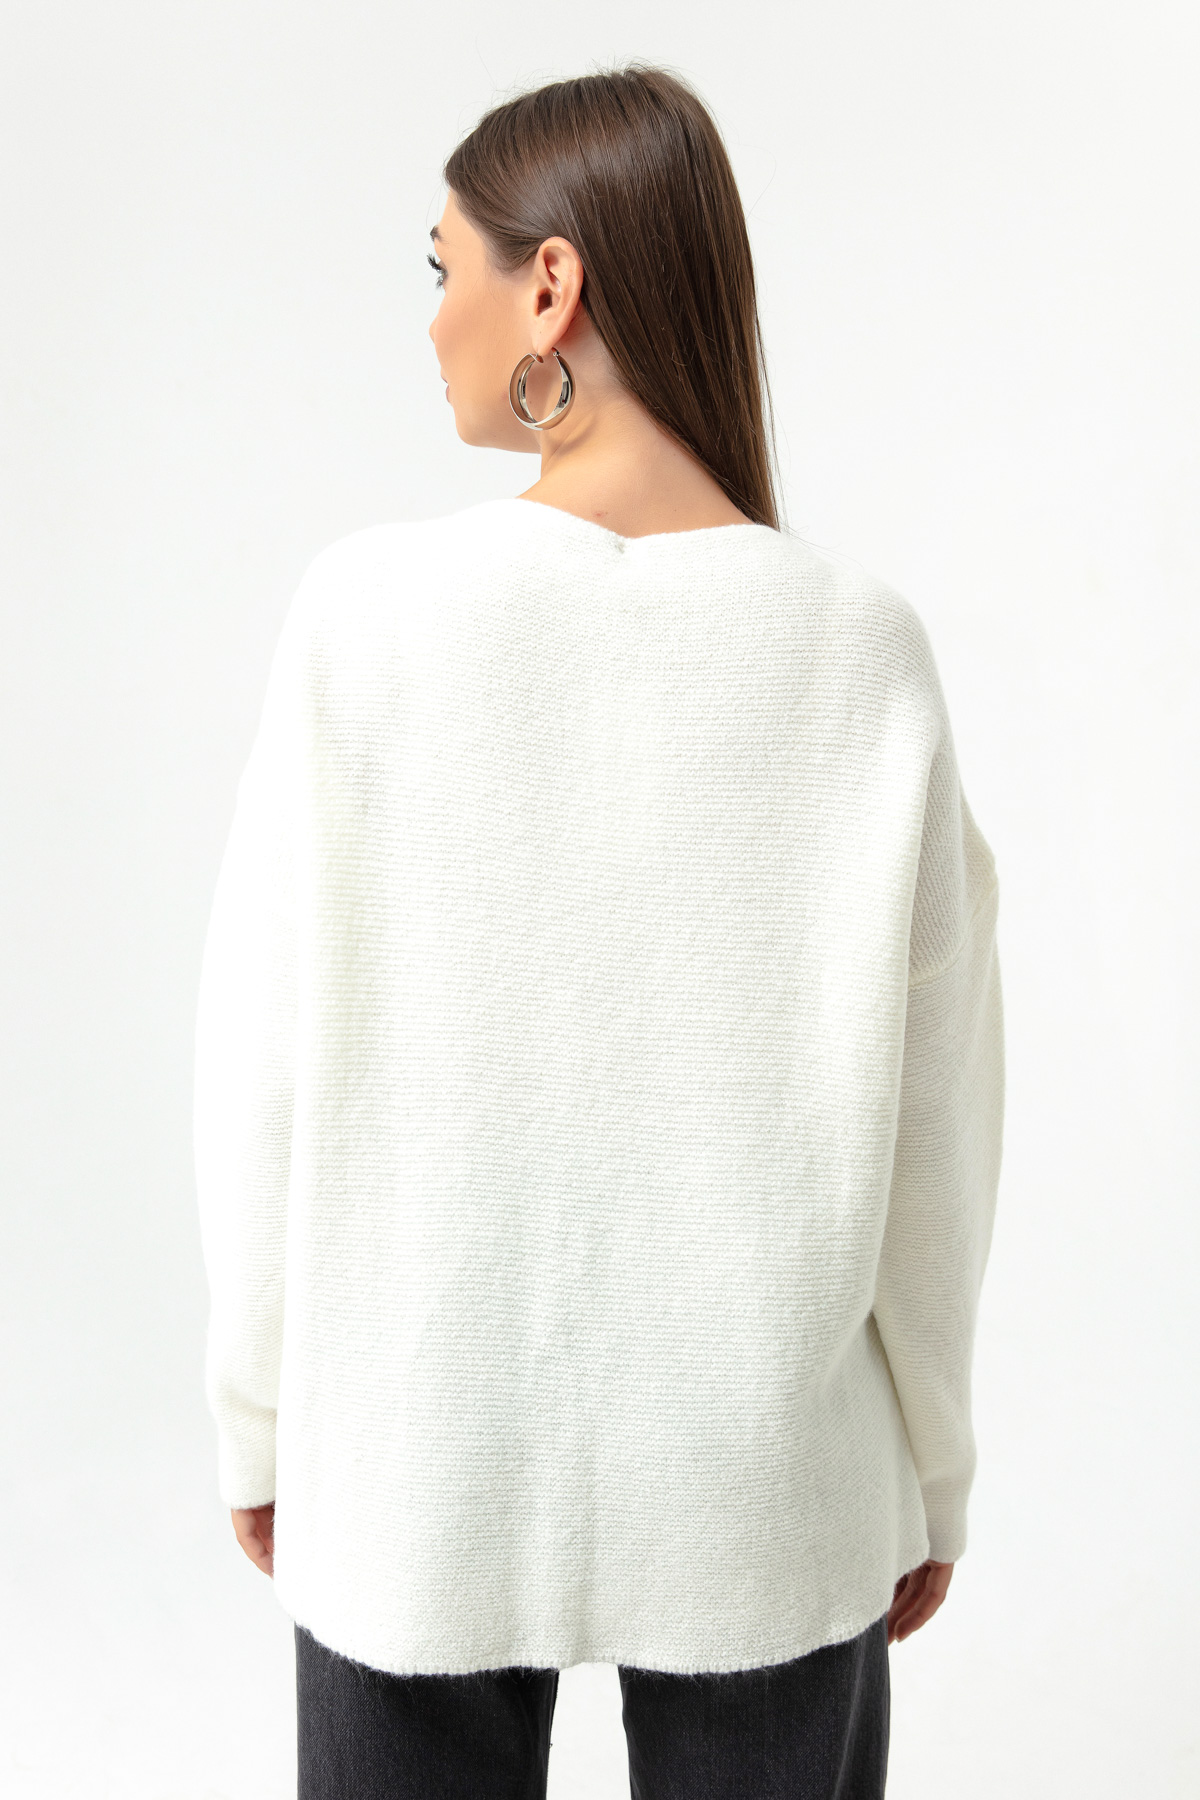 Women's White Boat Neck Knitwear Sweater